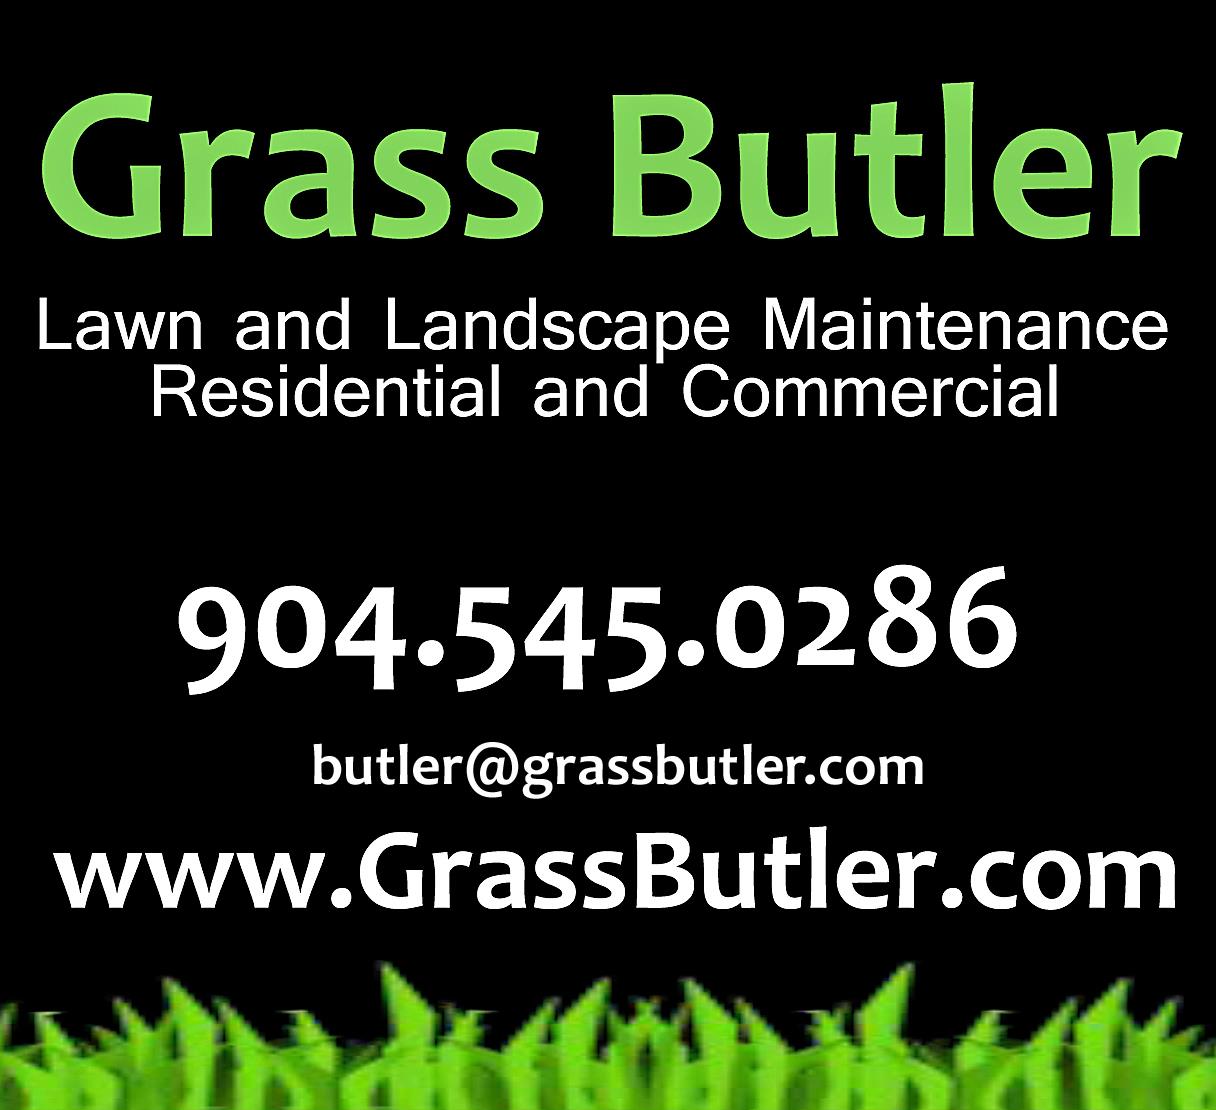 Grass Butler Lawn & Landscape Maintenance